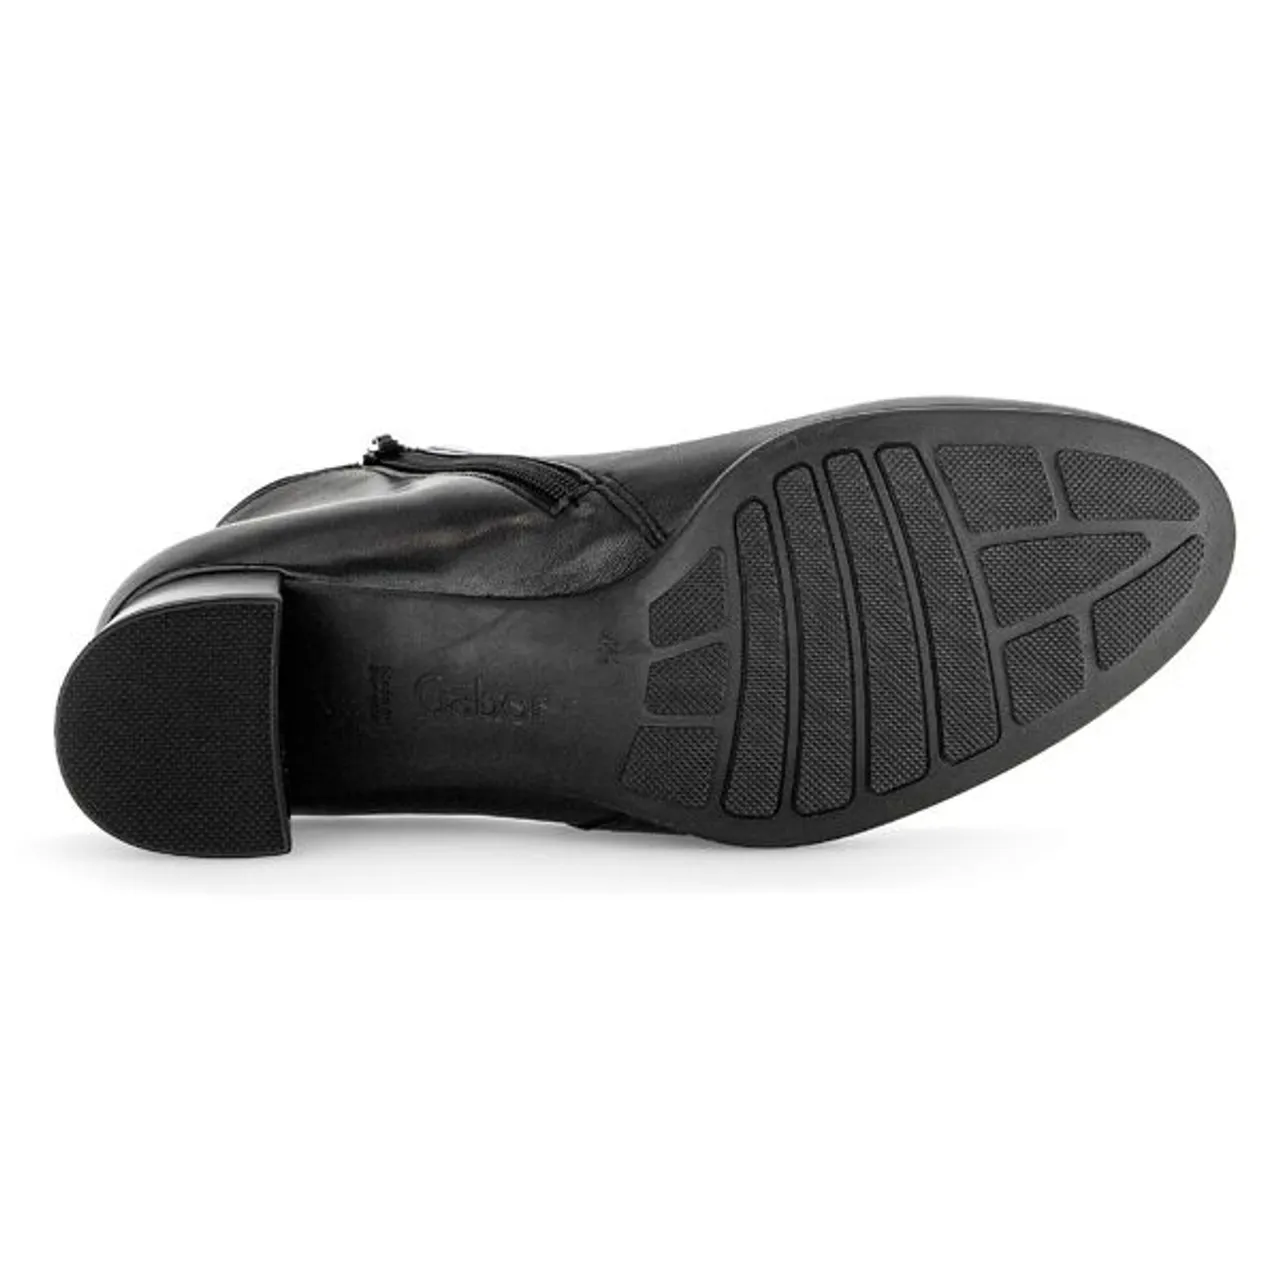 Stiefelette GABOR "St. Tropez" Gr. 41, schwarz Damen Schuhe Reißverschlussstiefeletten mit Schmuckelement